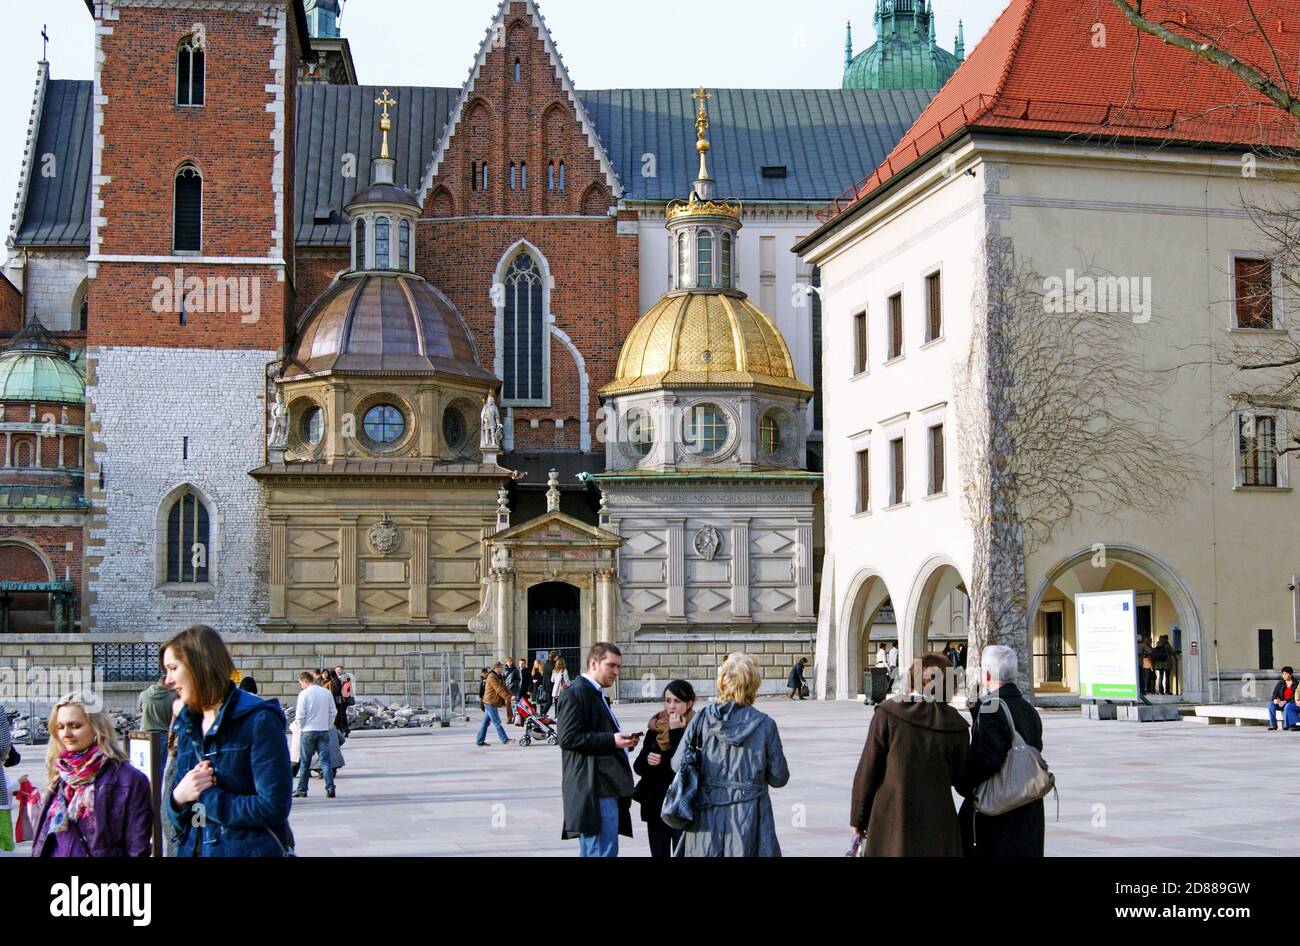 Wawel Königliches Schloss in Krakau, Polen, ist eine Residenz, Museum und Kathedrale von verschiedenen architektonischen Stilen. Stockfoto